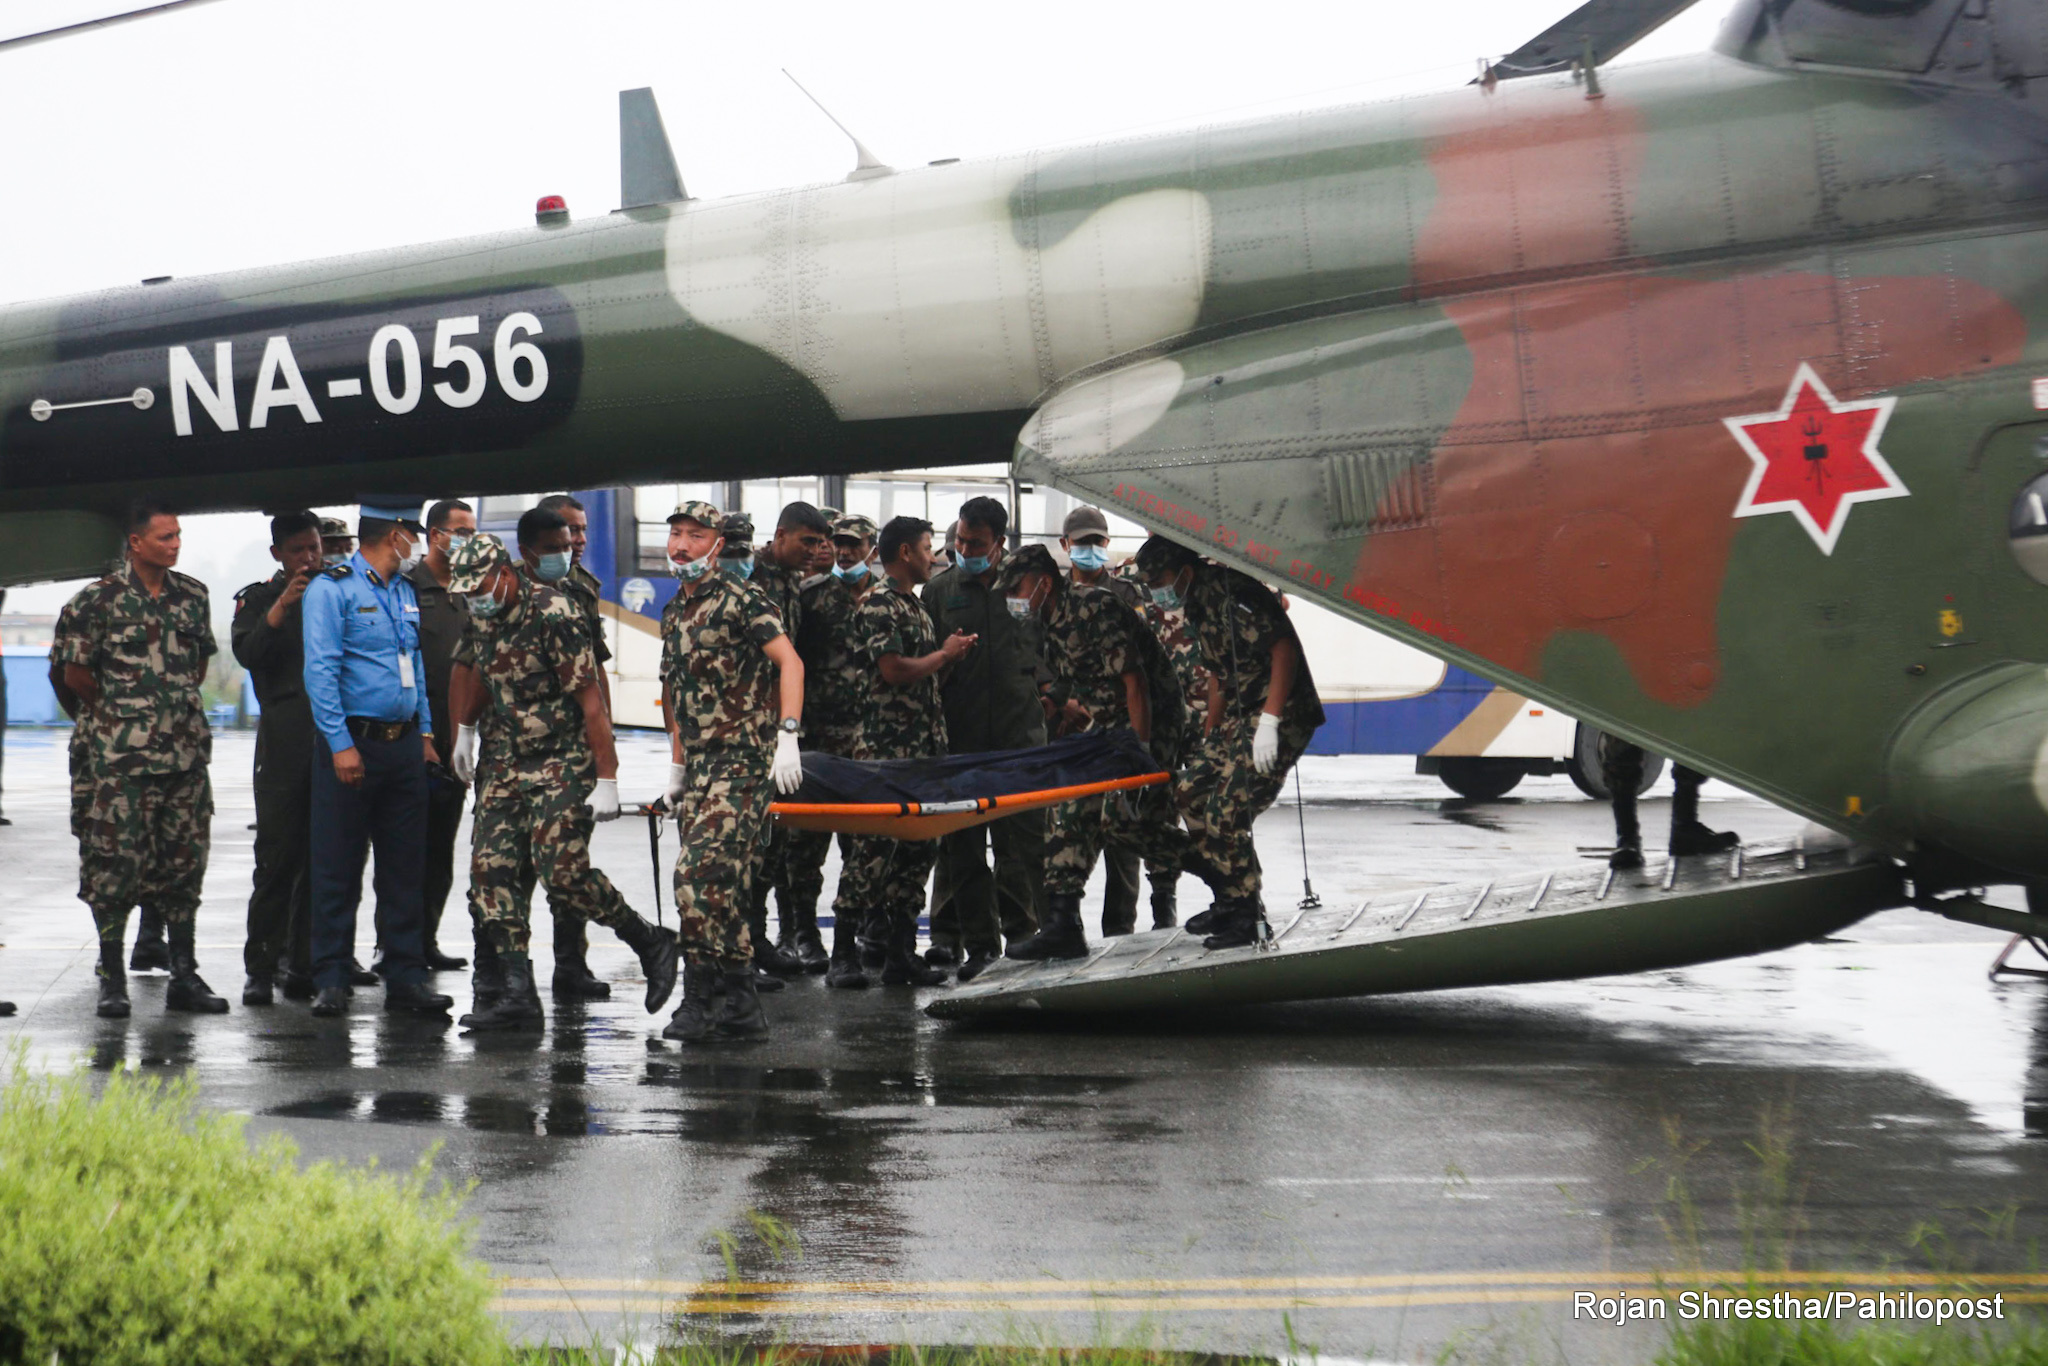 विमान दुर्घटनामा मृत्यु भएकामध्ये बाँकी १२ जनाको शव पनि ल्याइयो काठमाडौं